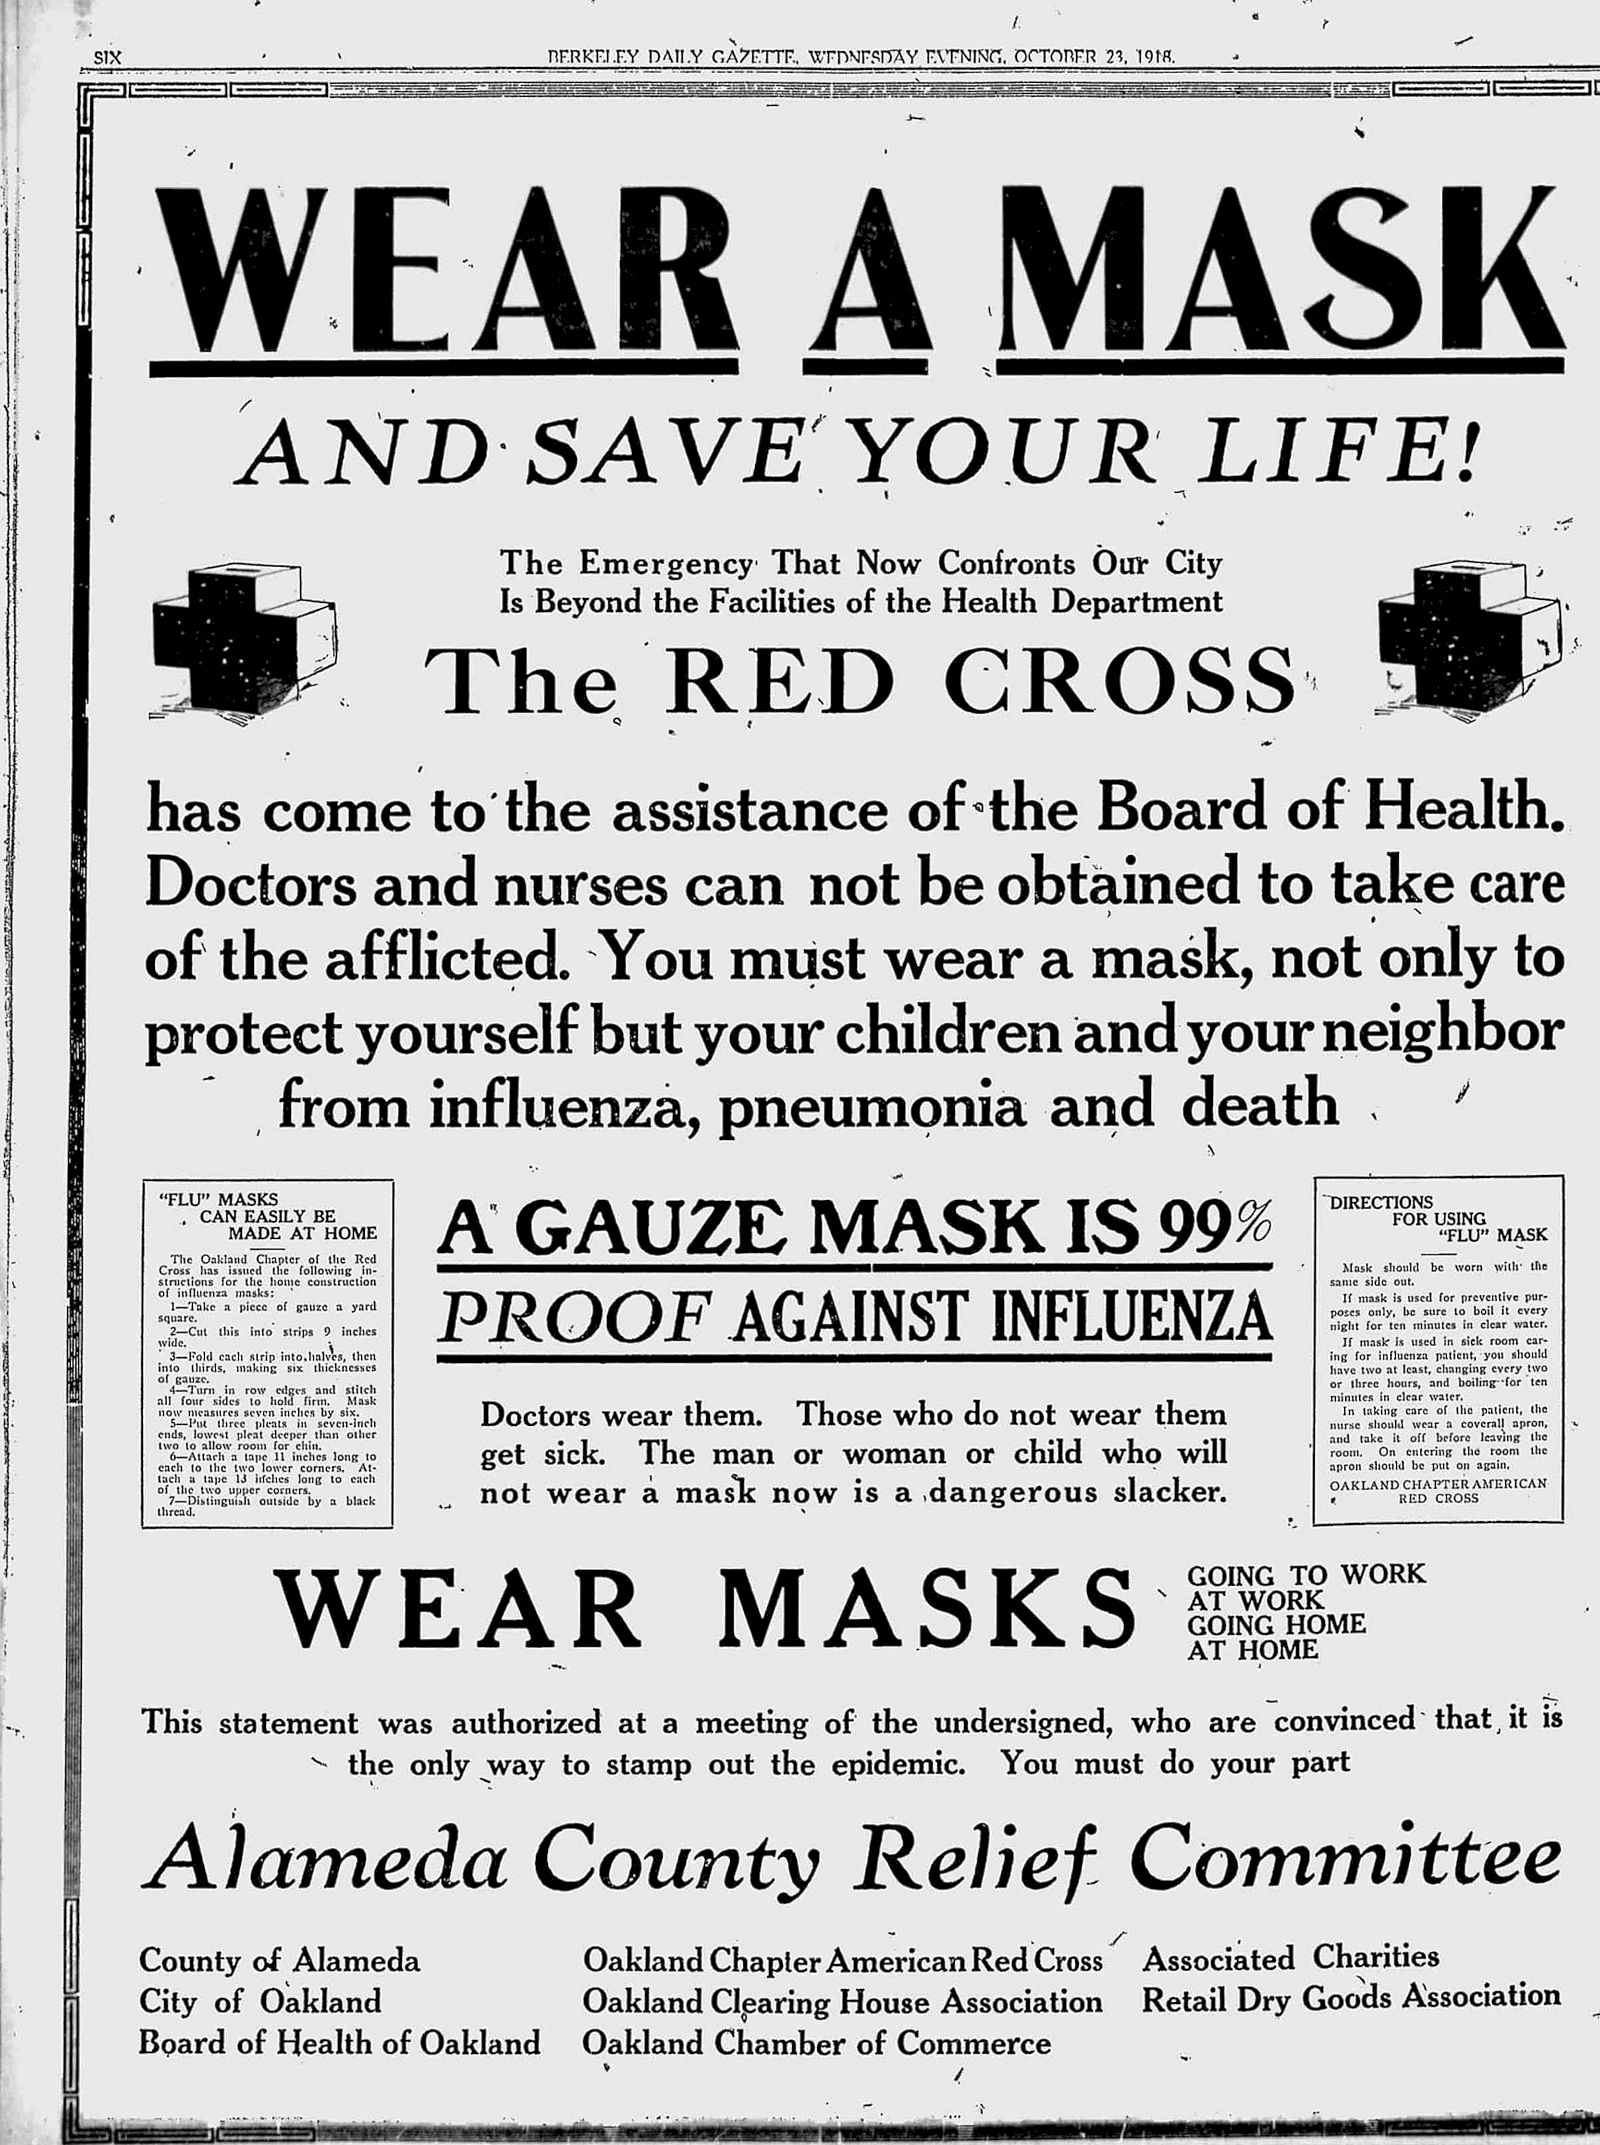 Den egentlige årsag til maskekravet i pandemien